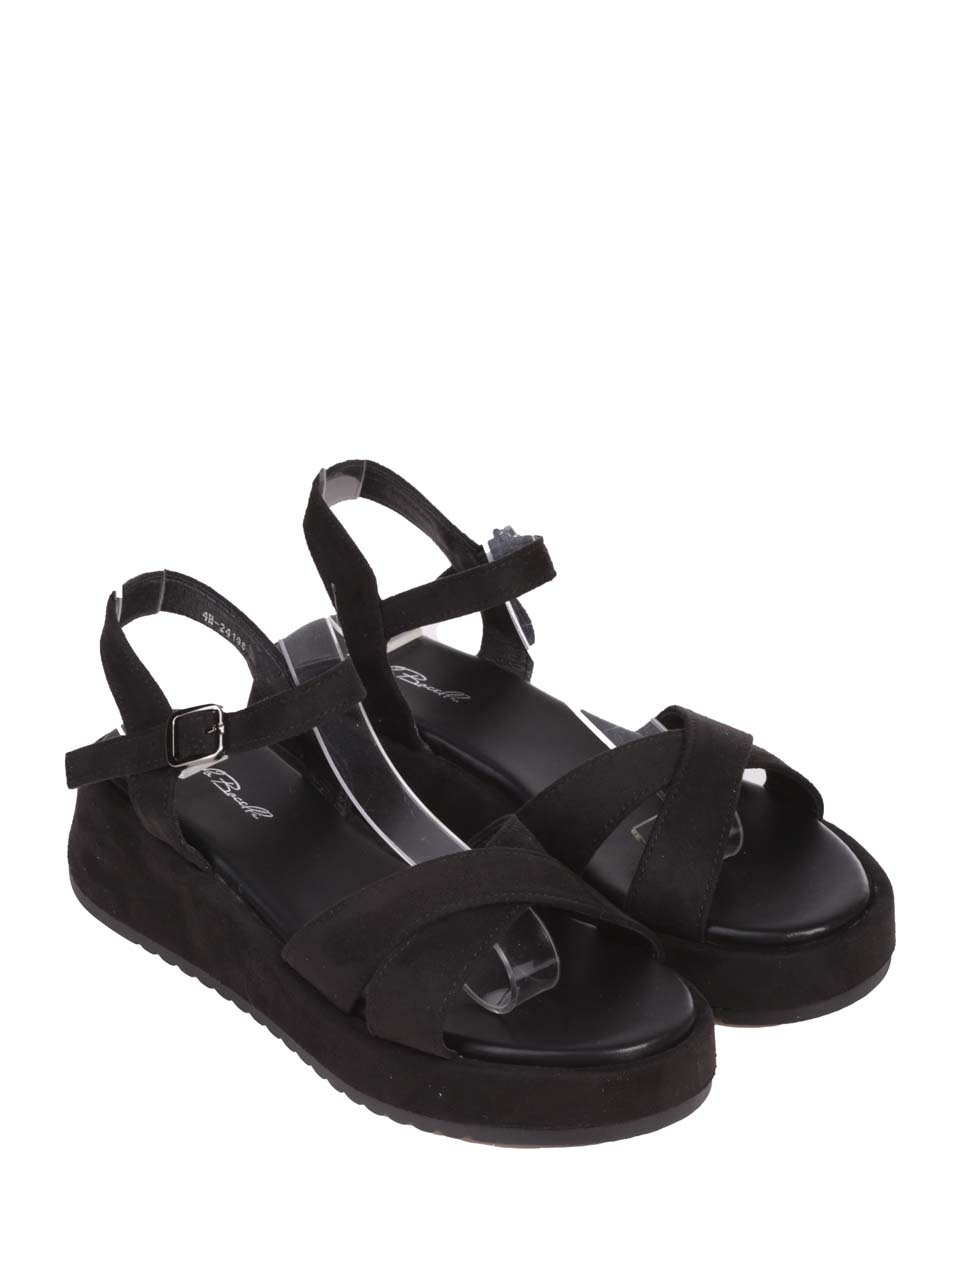 Ежедневни дамски сандали на платформа в черно 4H-24198 black